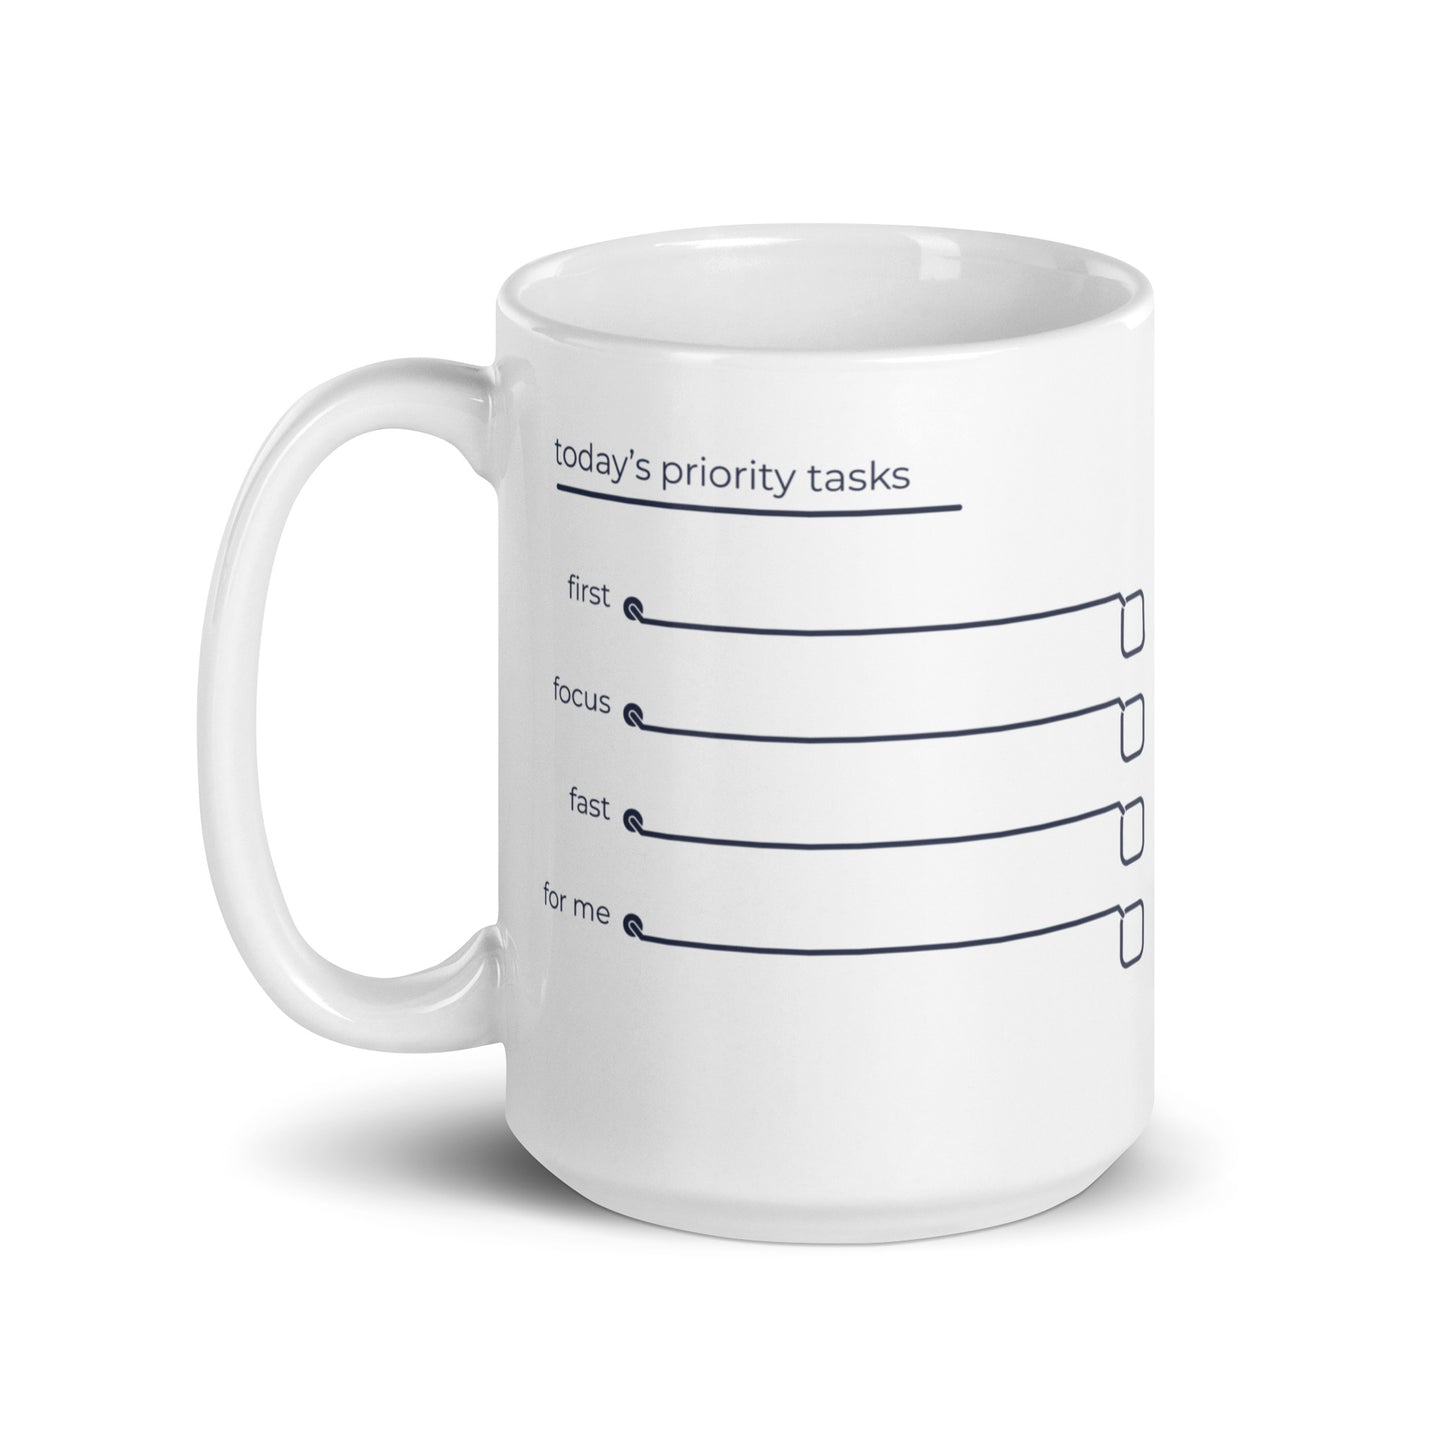 Daily Priorities mug